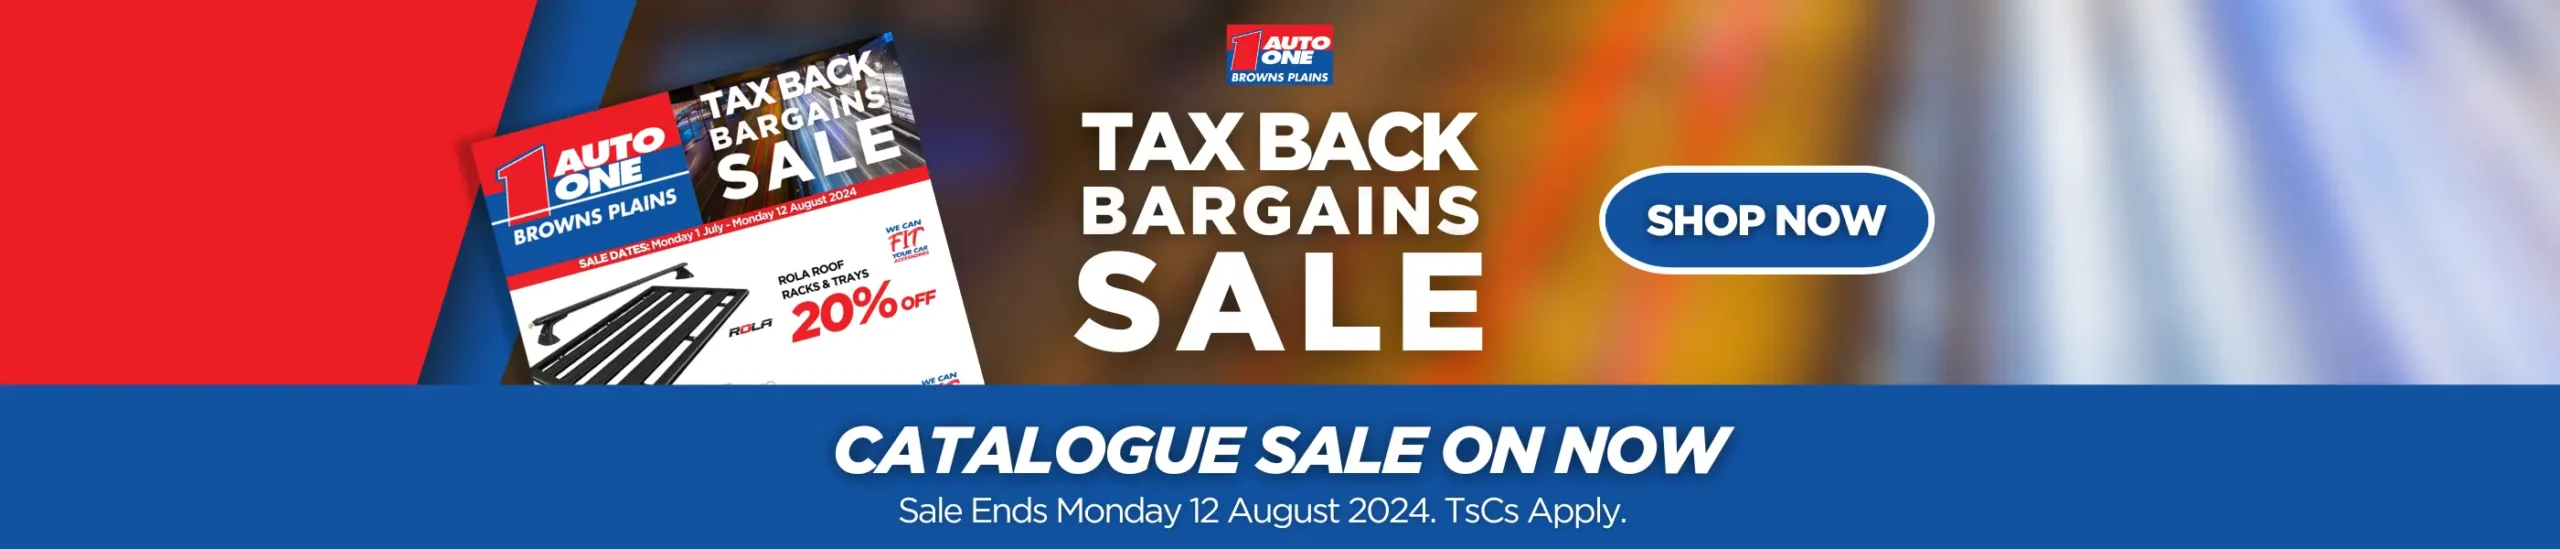 Tax Back Bargains Sale Web Banner